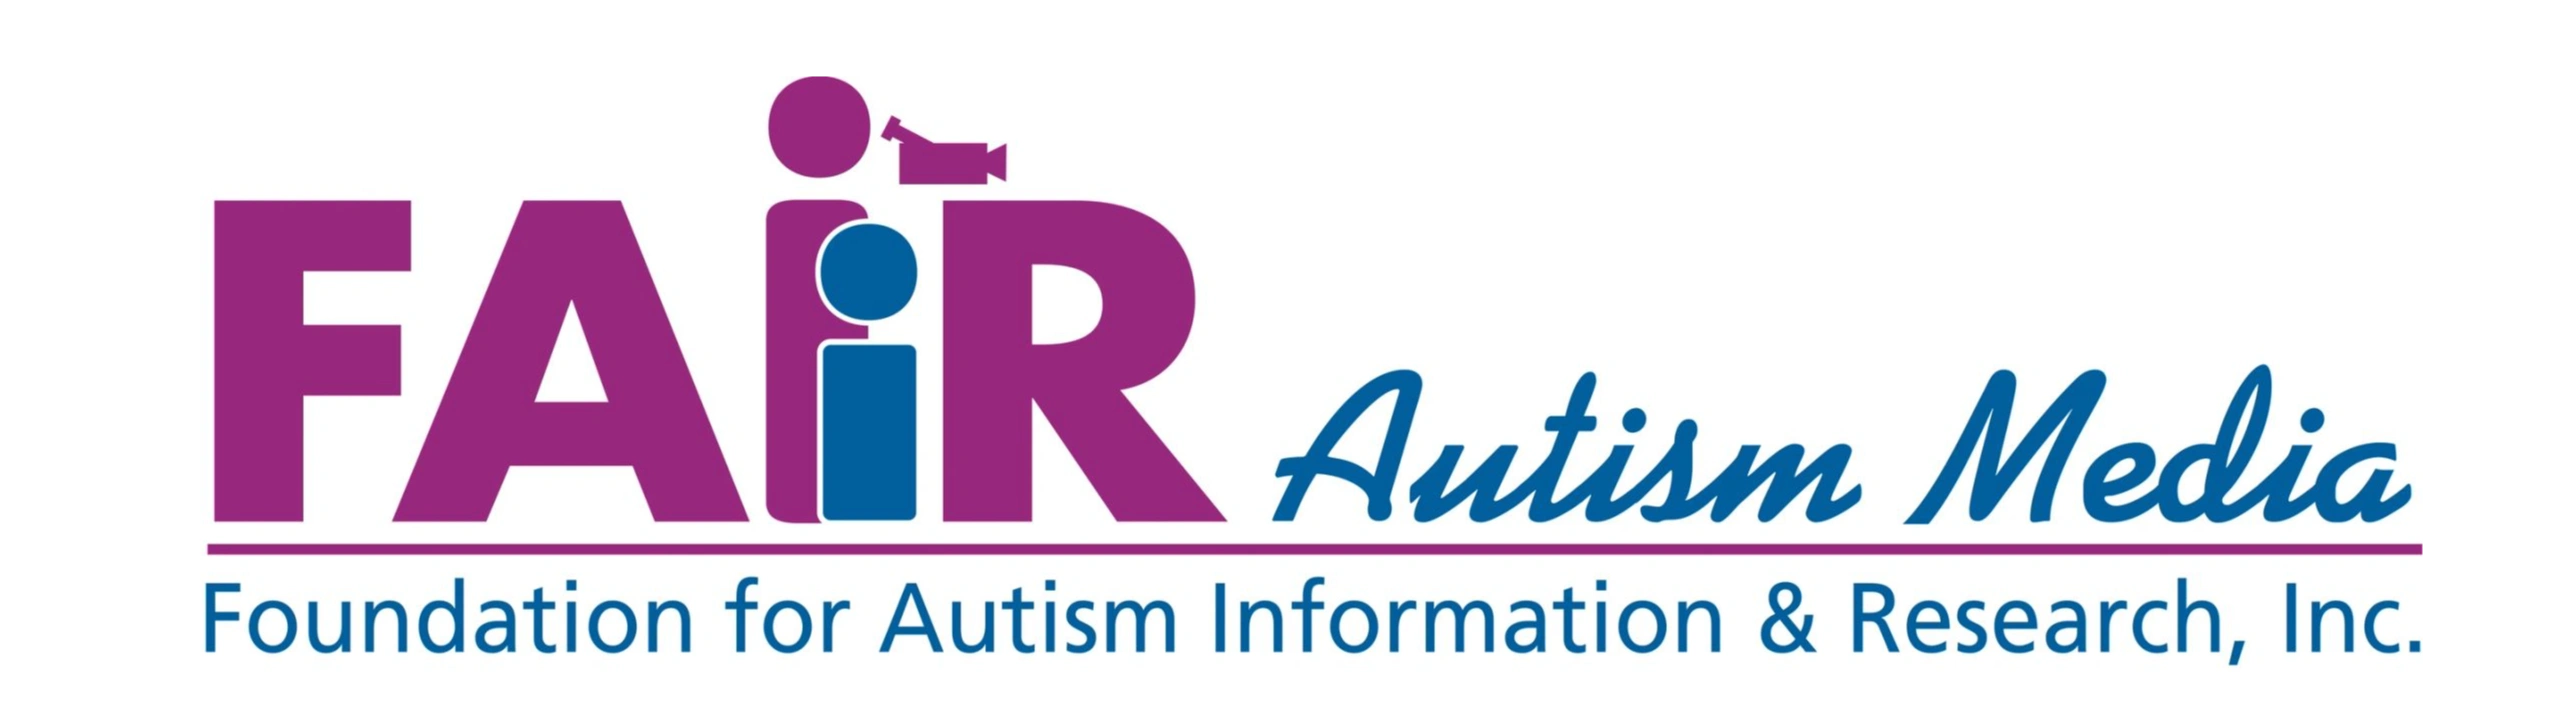 FAIR Autism Media logo